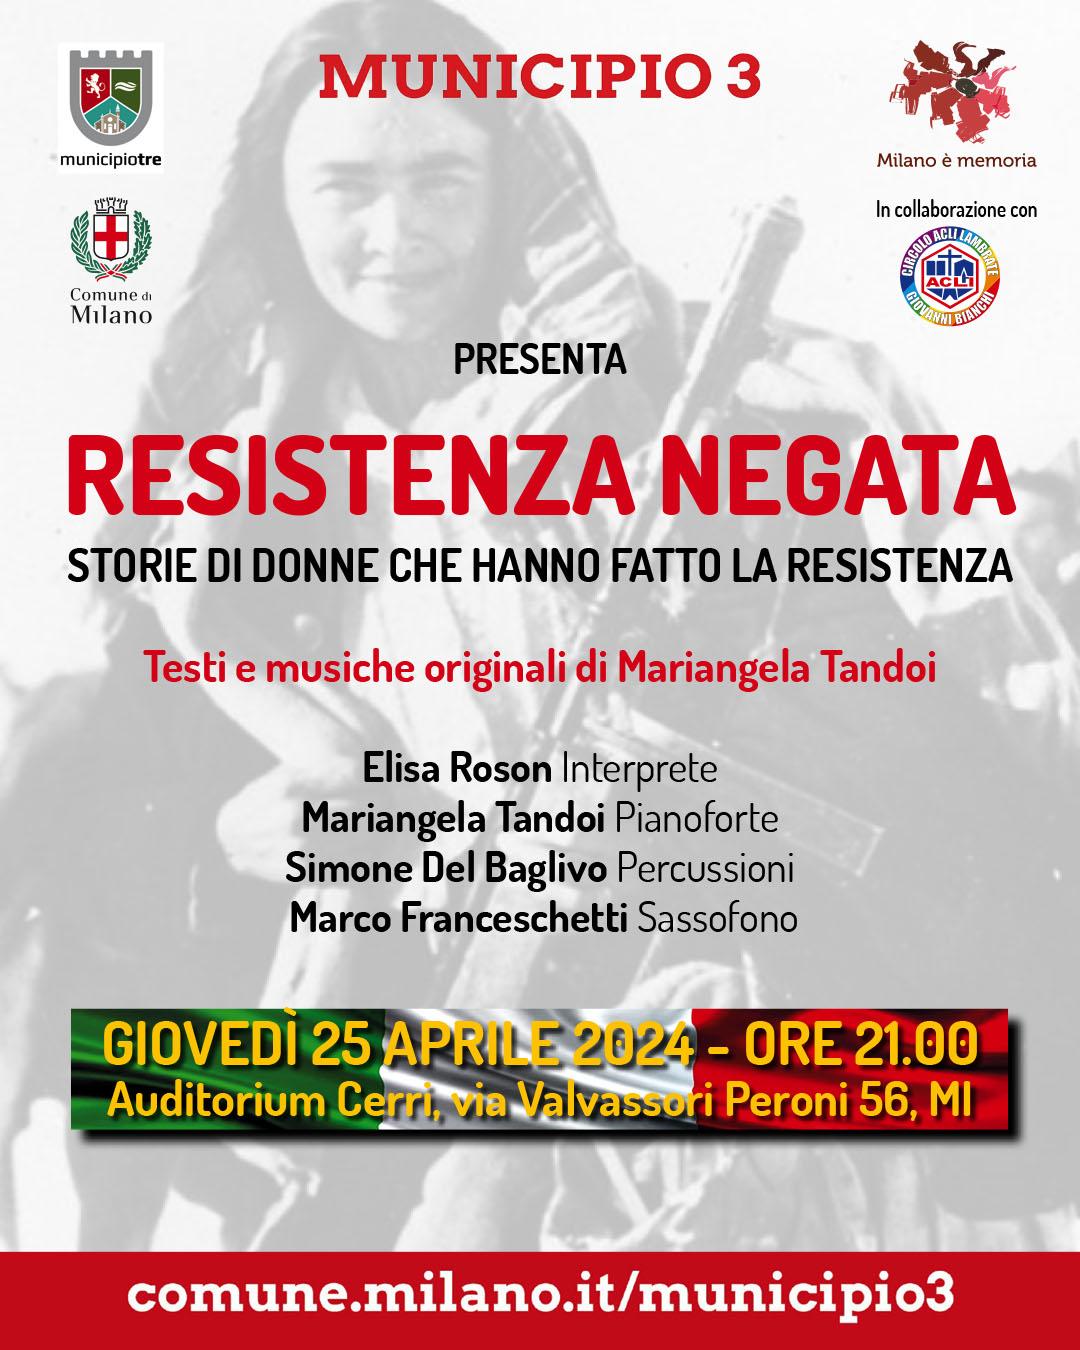 Resistenza negata - Storie di donne che hanno fatto la resistenza @ Auditorium Cerri